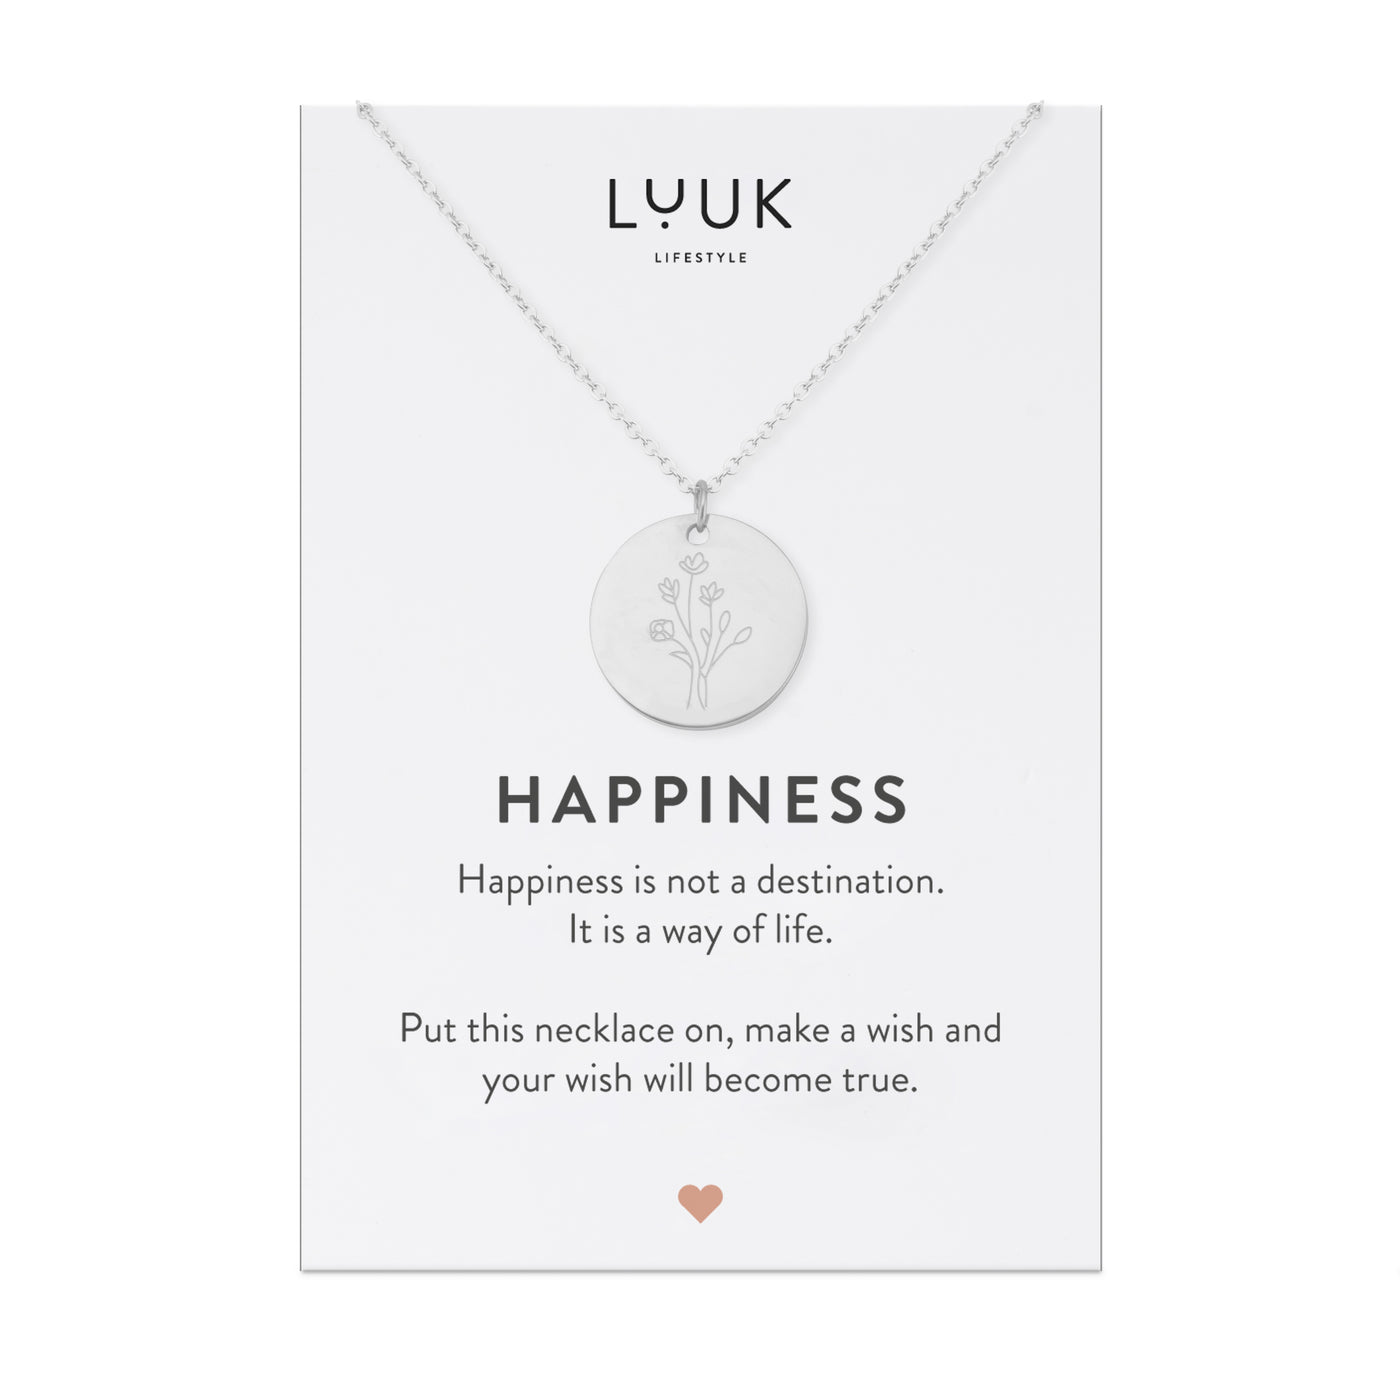 Silberne Halskette mit Blume Anhänger auf Happiness Karte von der Marke Luuk Lifestyle.